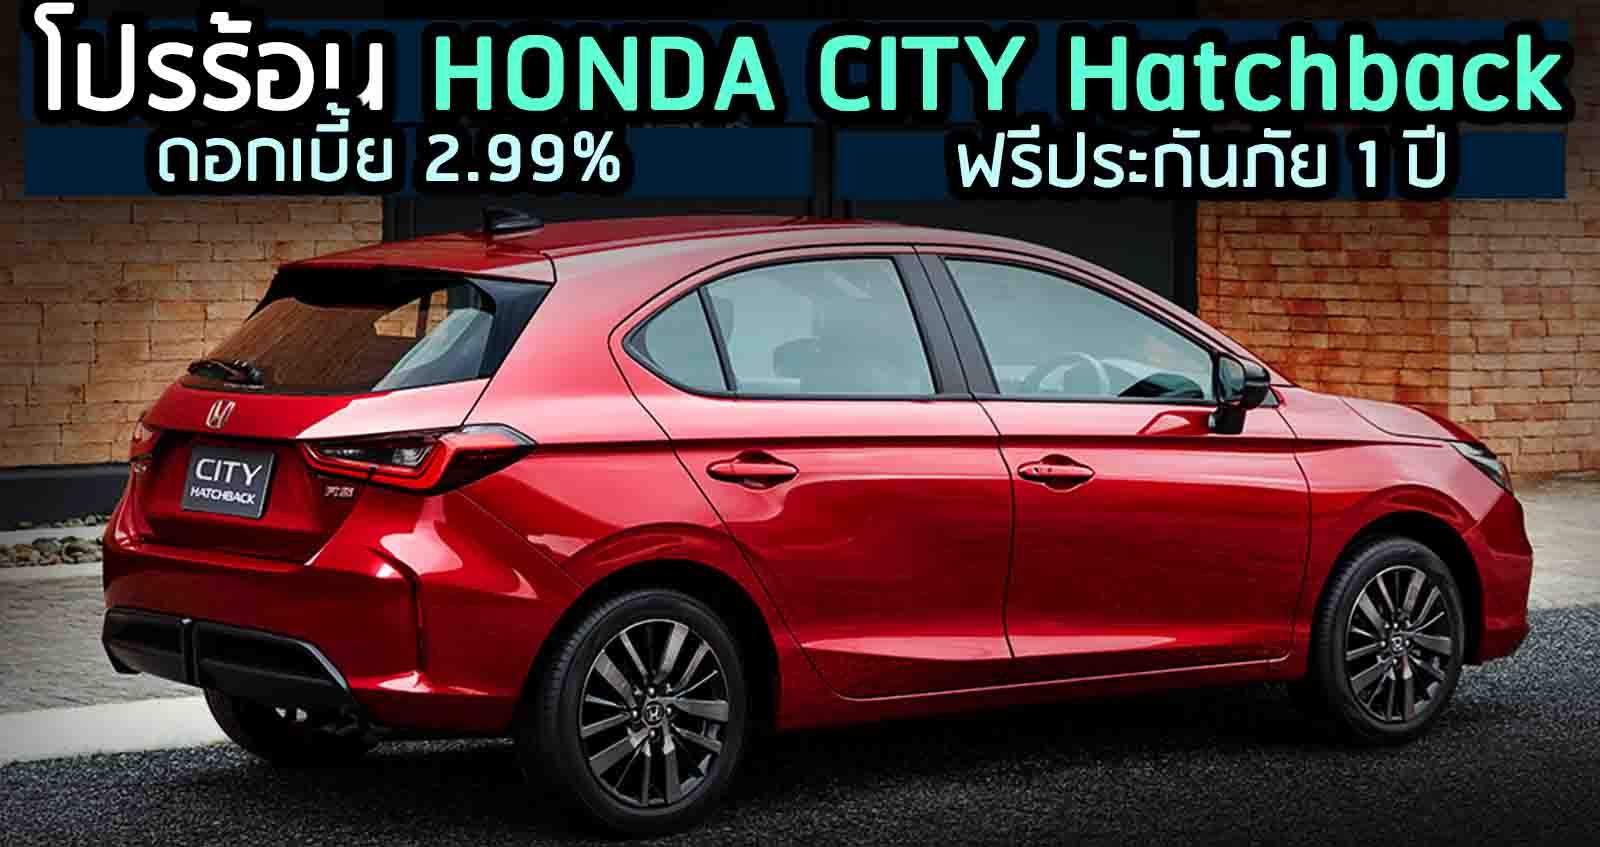 โปรร้อน HONDA CITY Hatchback ดอกเบี้ย 2.99% ของแถมเพียบ